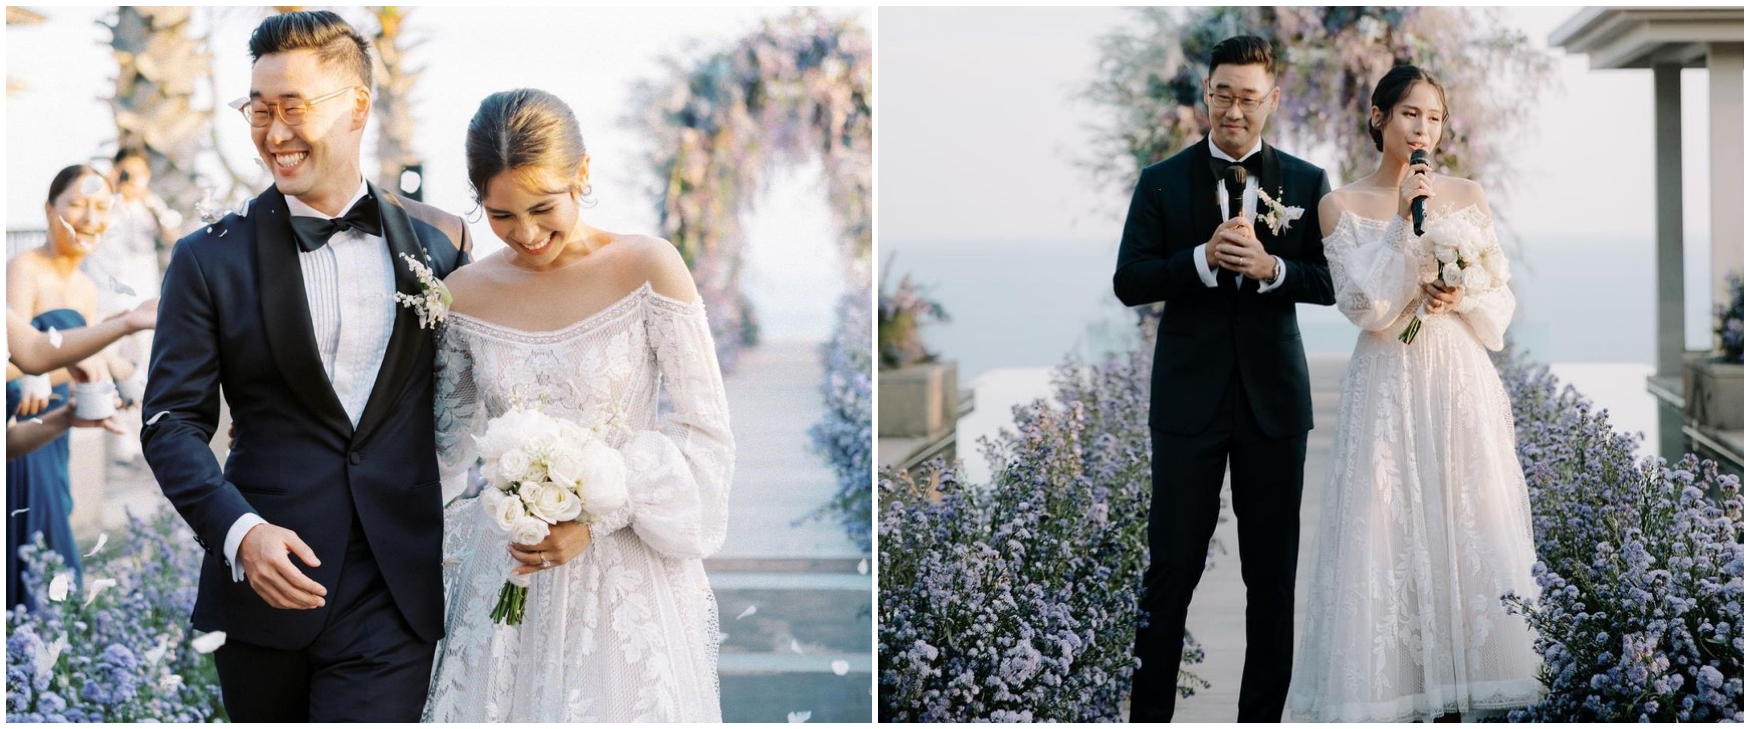 11 Momen resepsi pernikahan Maudy Ayunda & Jesse Choi, meriah di Bali